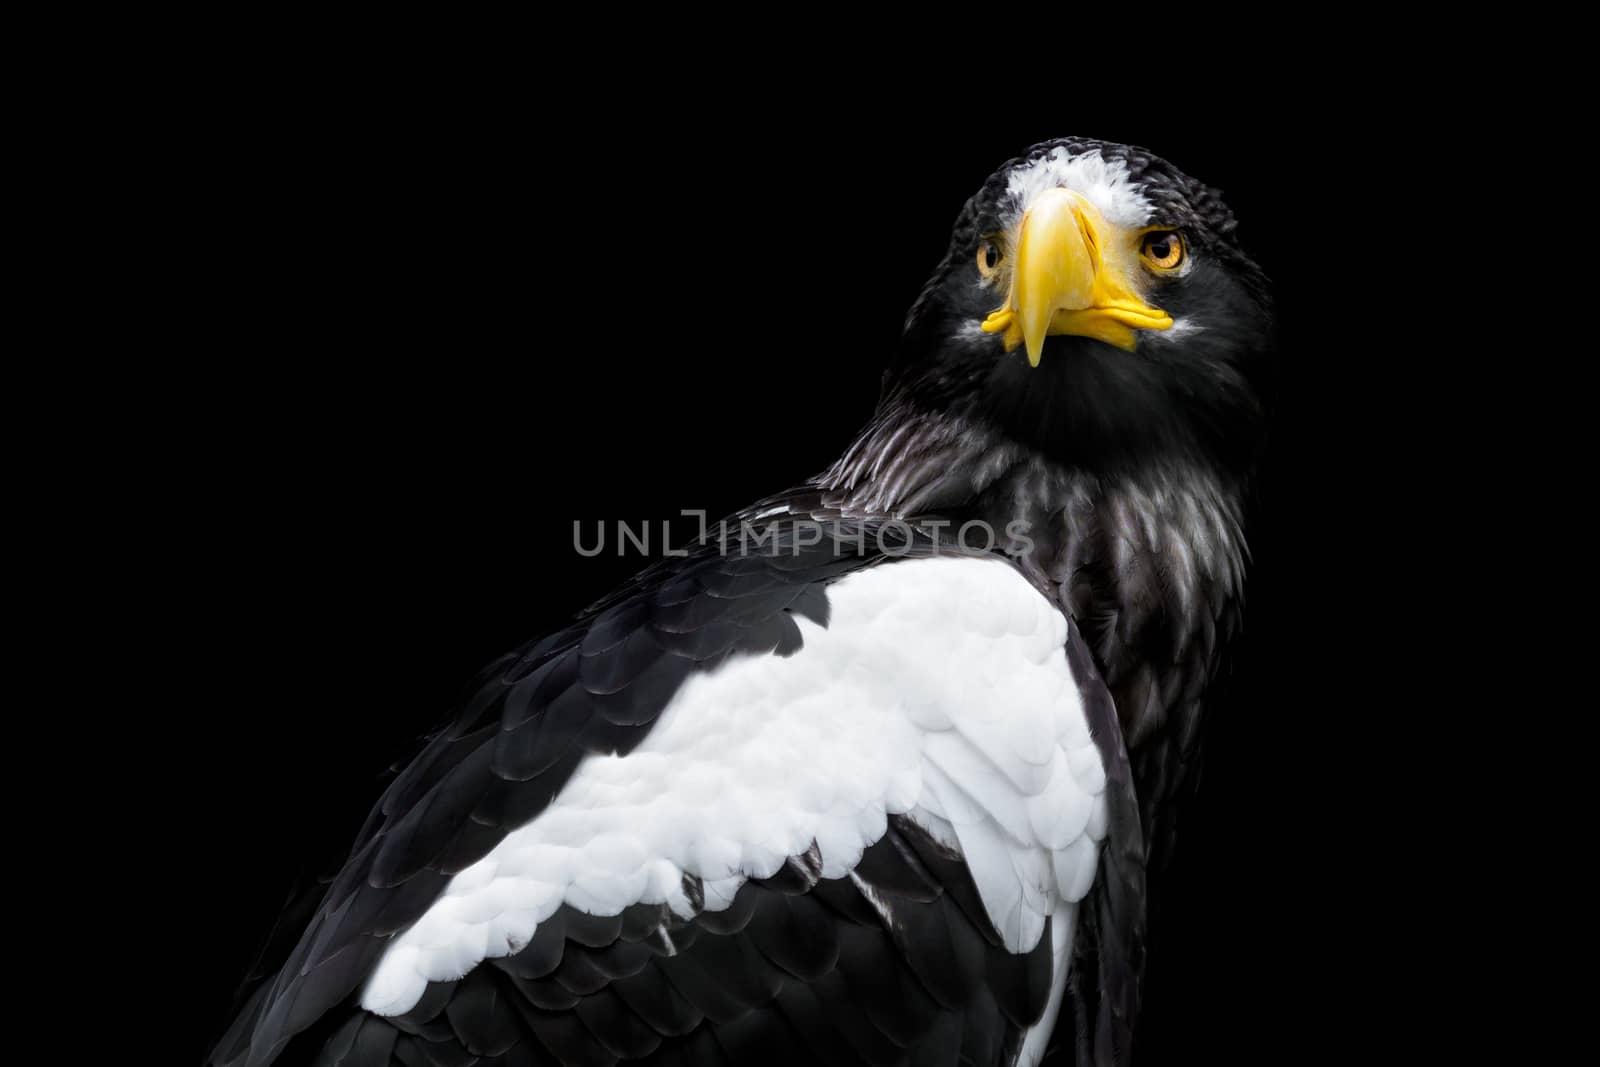 Steller's sea eagle on black background - Haliaeetus pelagicus